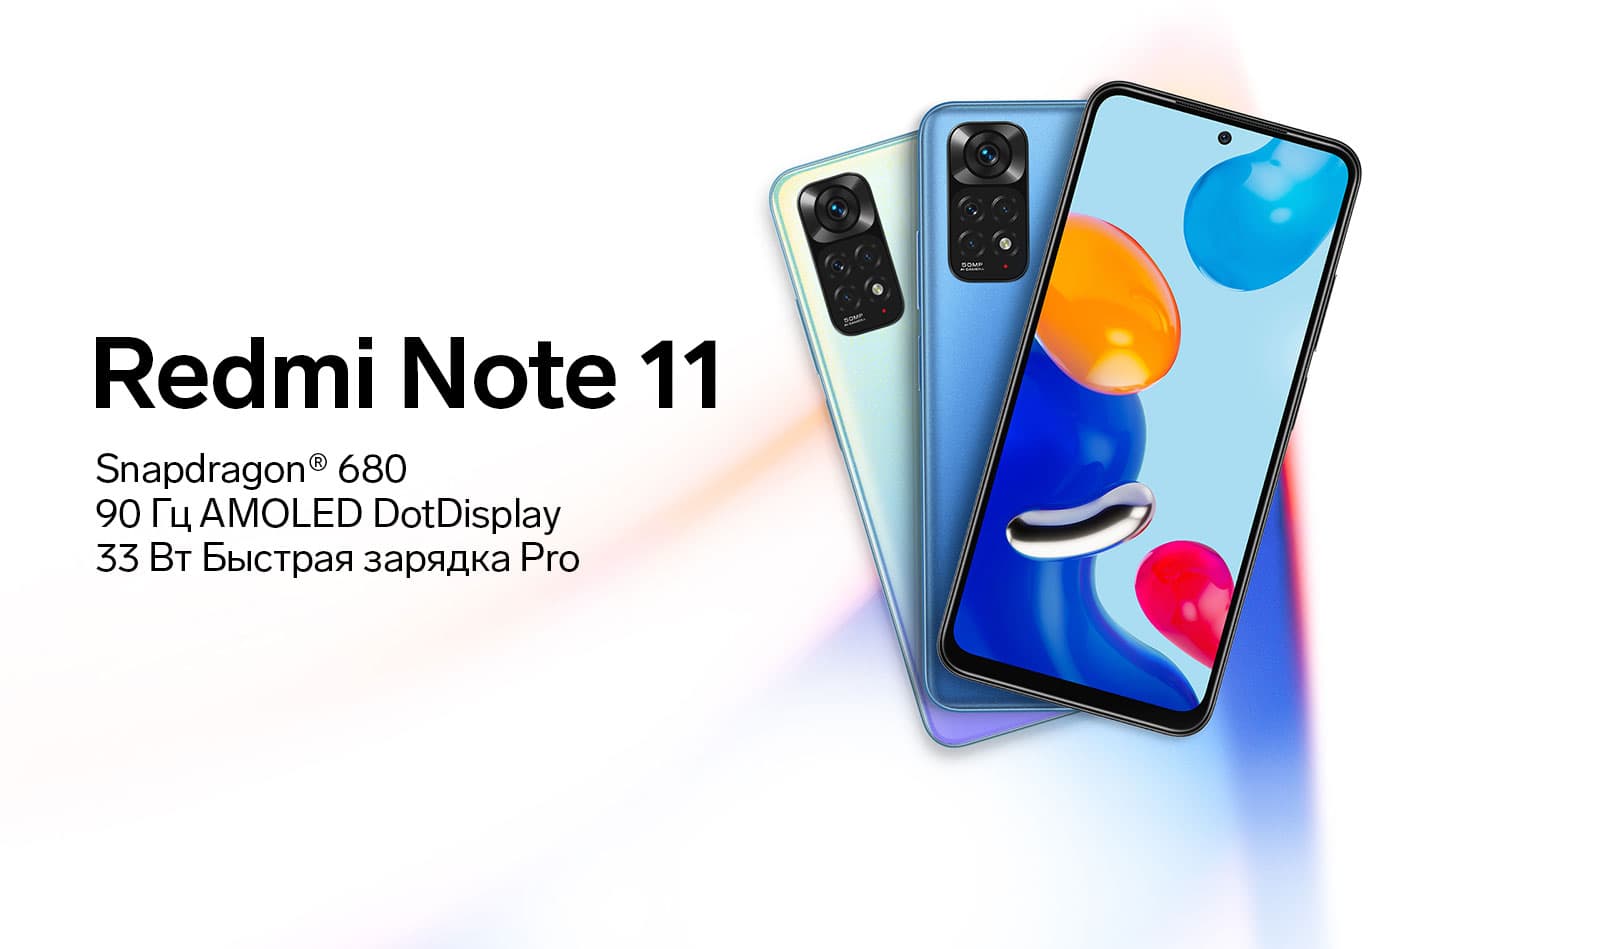 Xiaomi Note 11